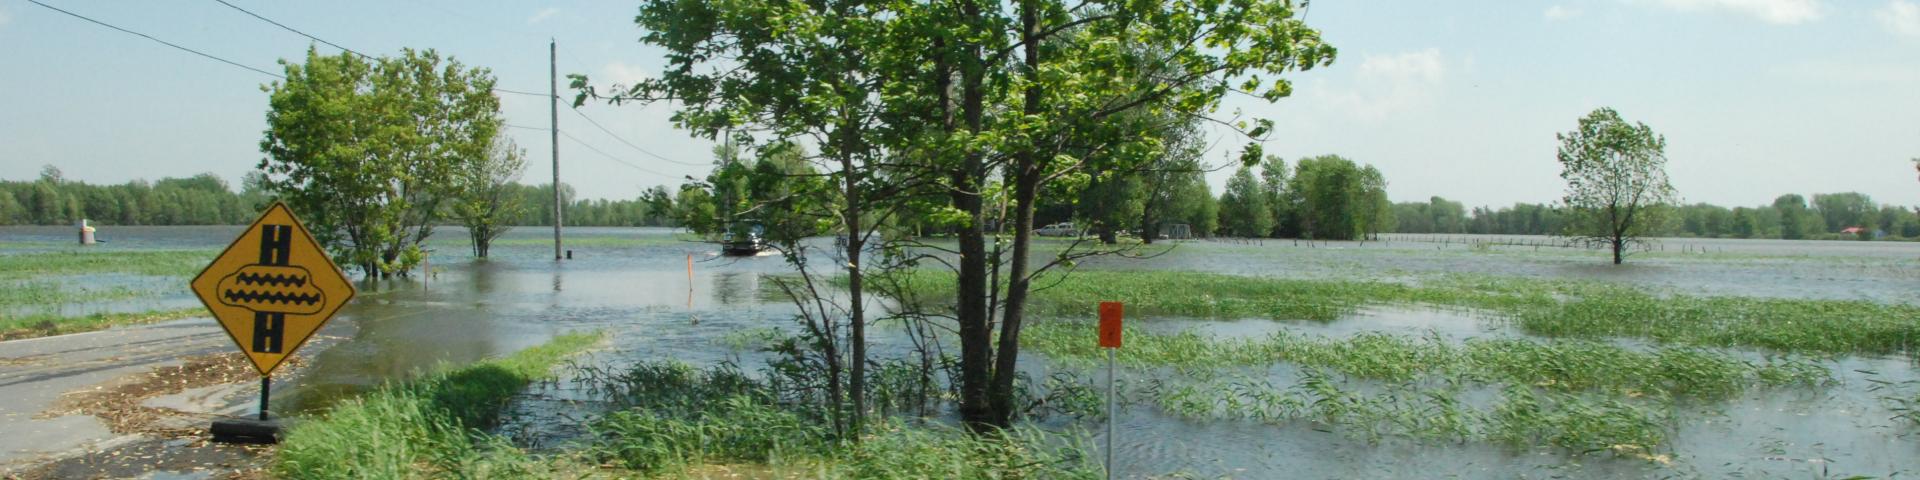 lake champlain floodplain management